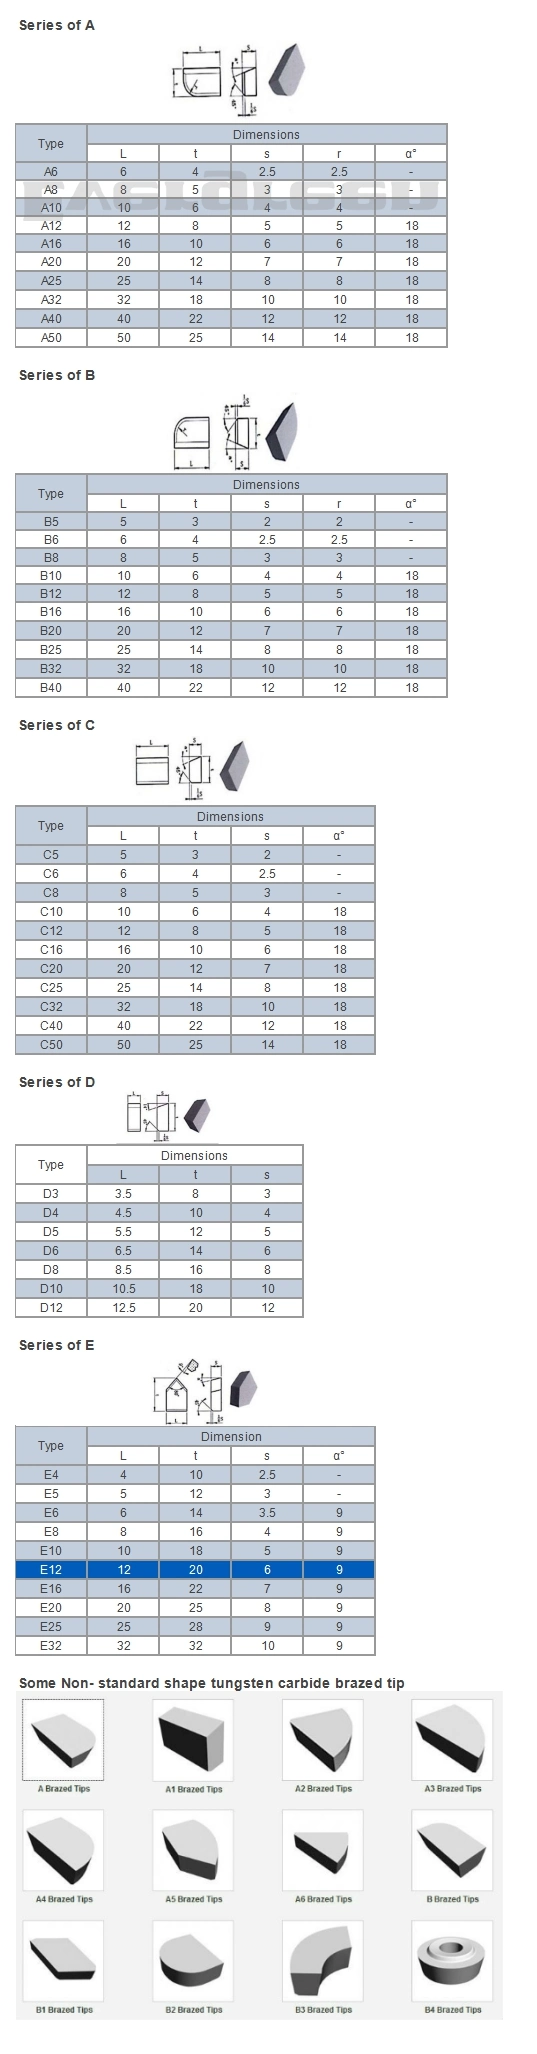 Tungsten Carbide Brazed Tips/ Carbide Tips